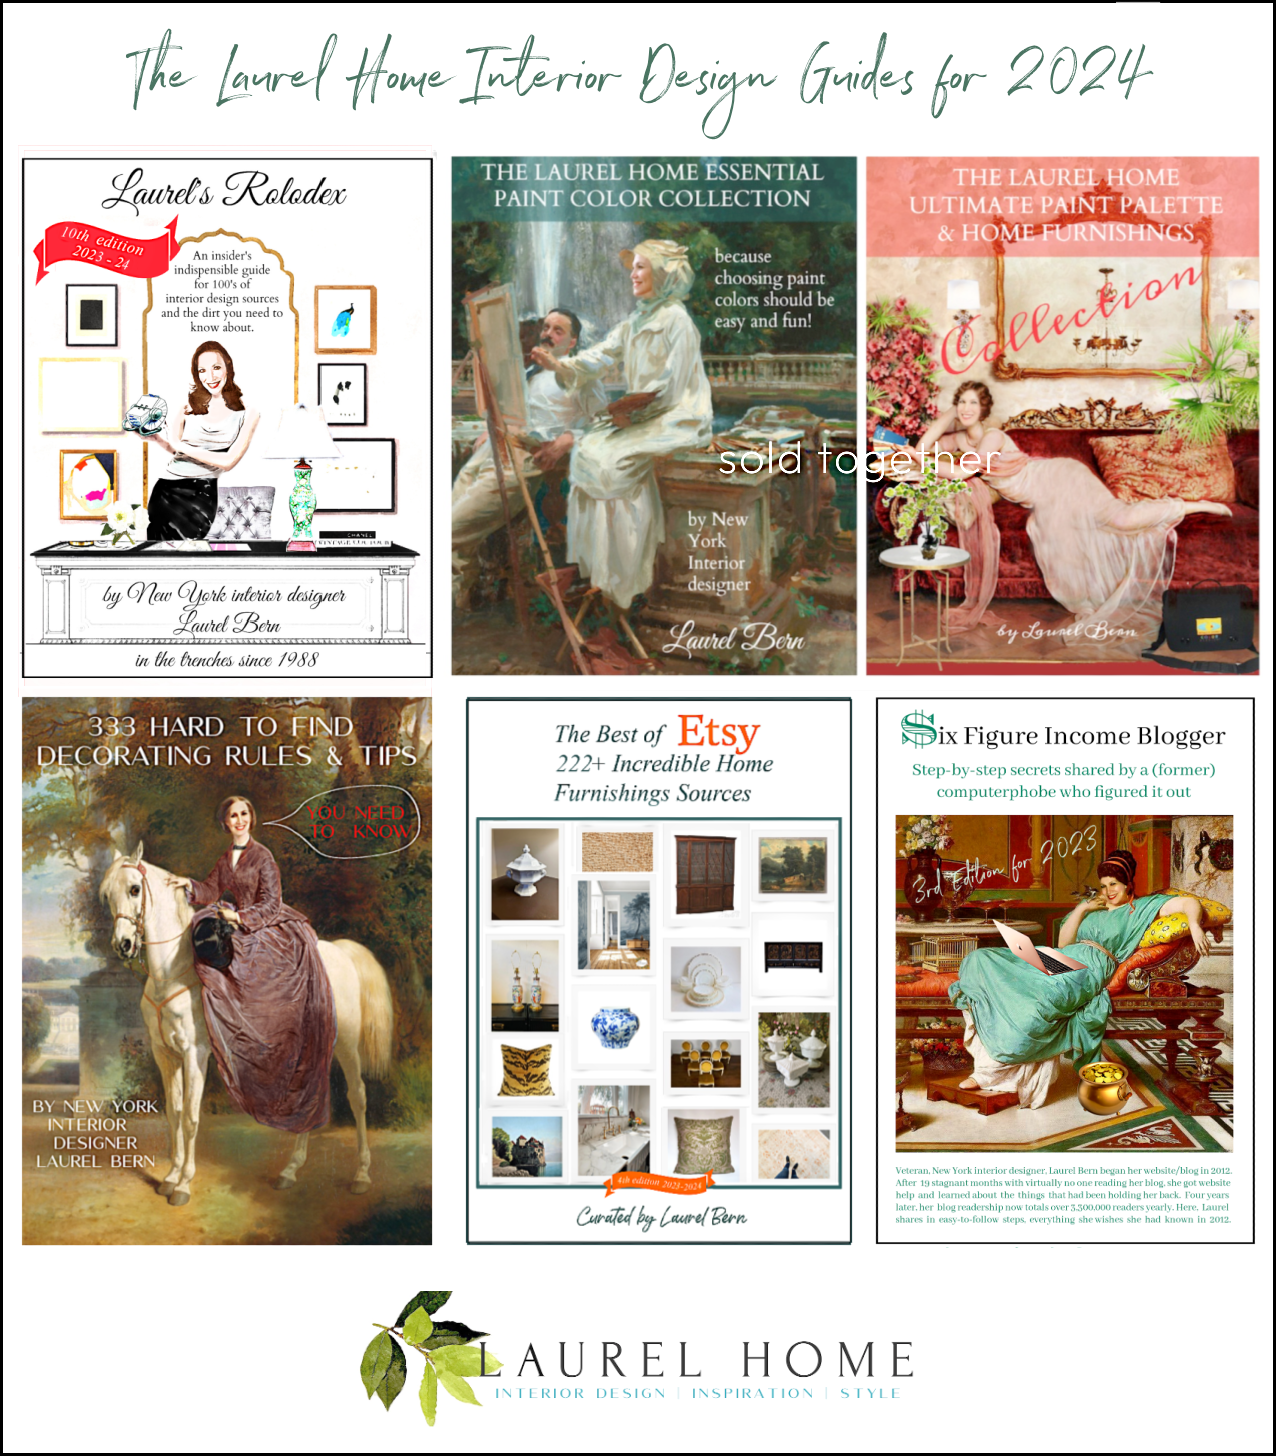 Laurel Home Interior Design Guides for 2024 - Laurel Home Blog News 2023